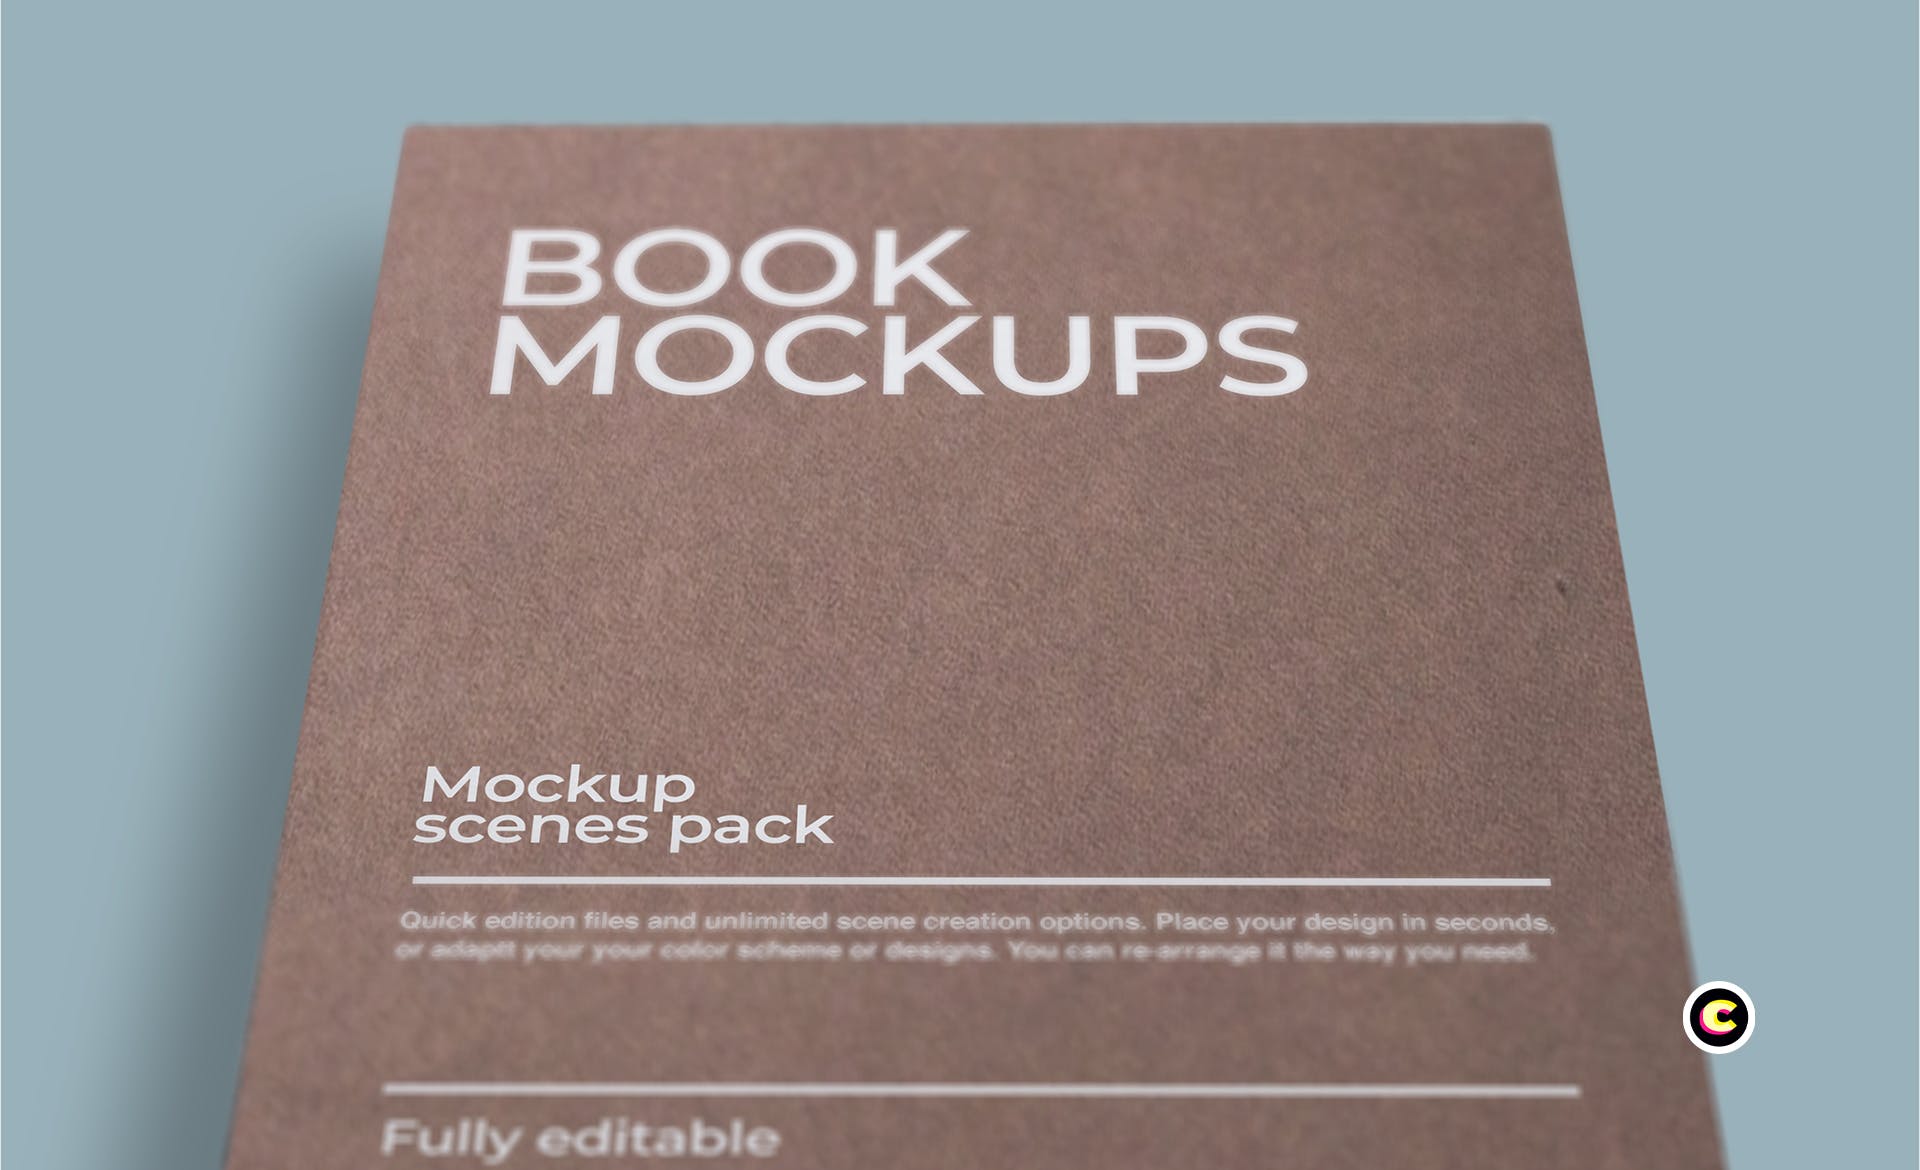 牛皮纸图书封面设计图案样机第一素材精选 Book Mockups插图(3)